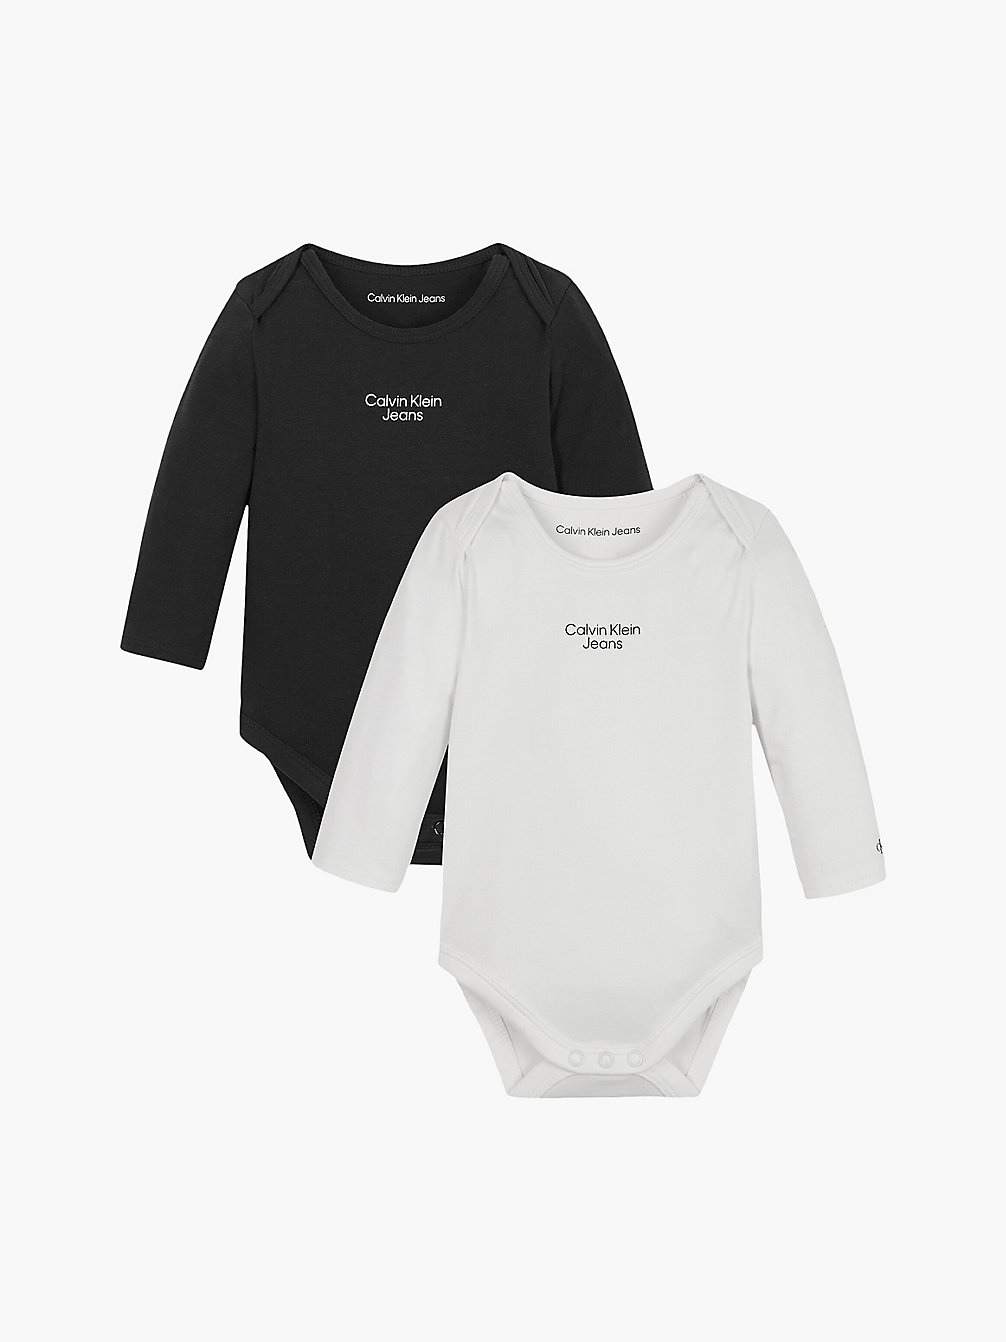 BLACK/BRIGHT WHITE Lot De 2 Bodys Pour Nouveau-Né undefined newborn Calvin Klein